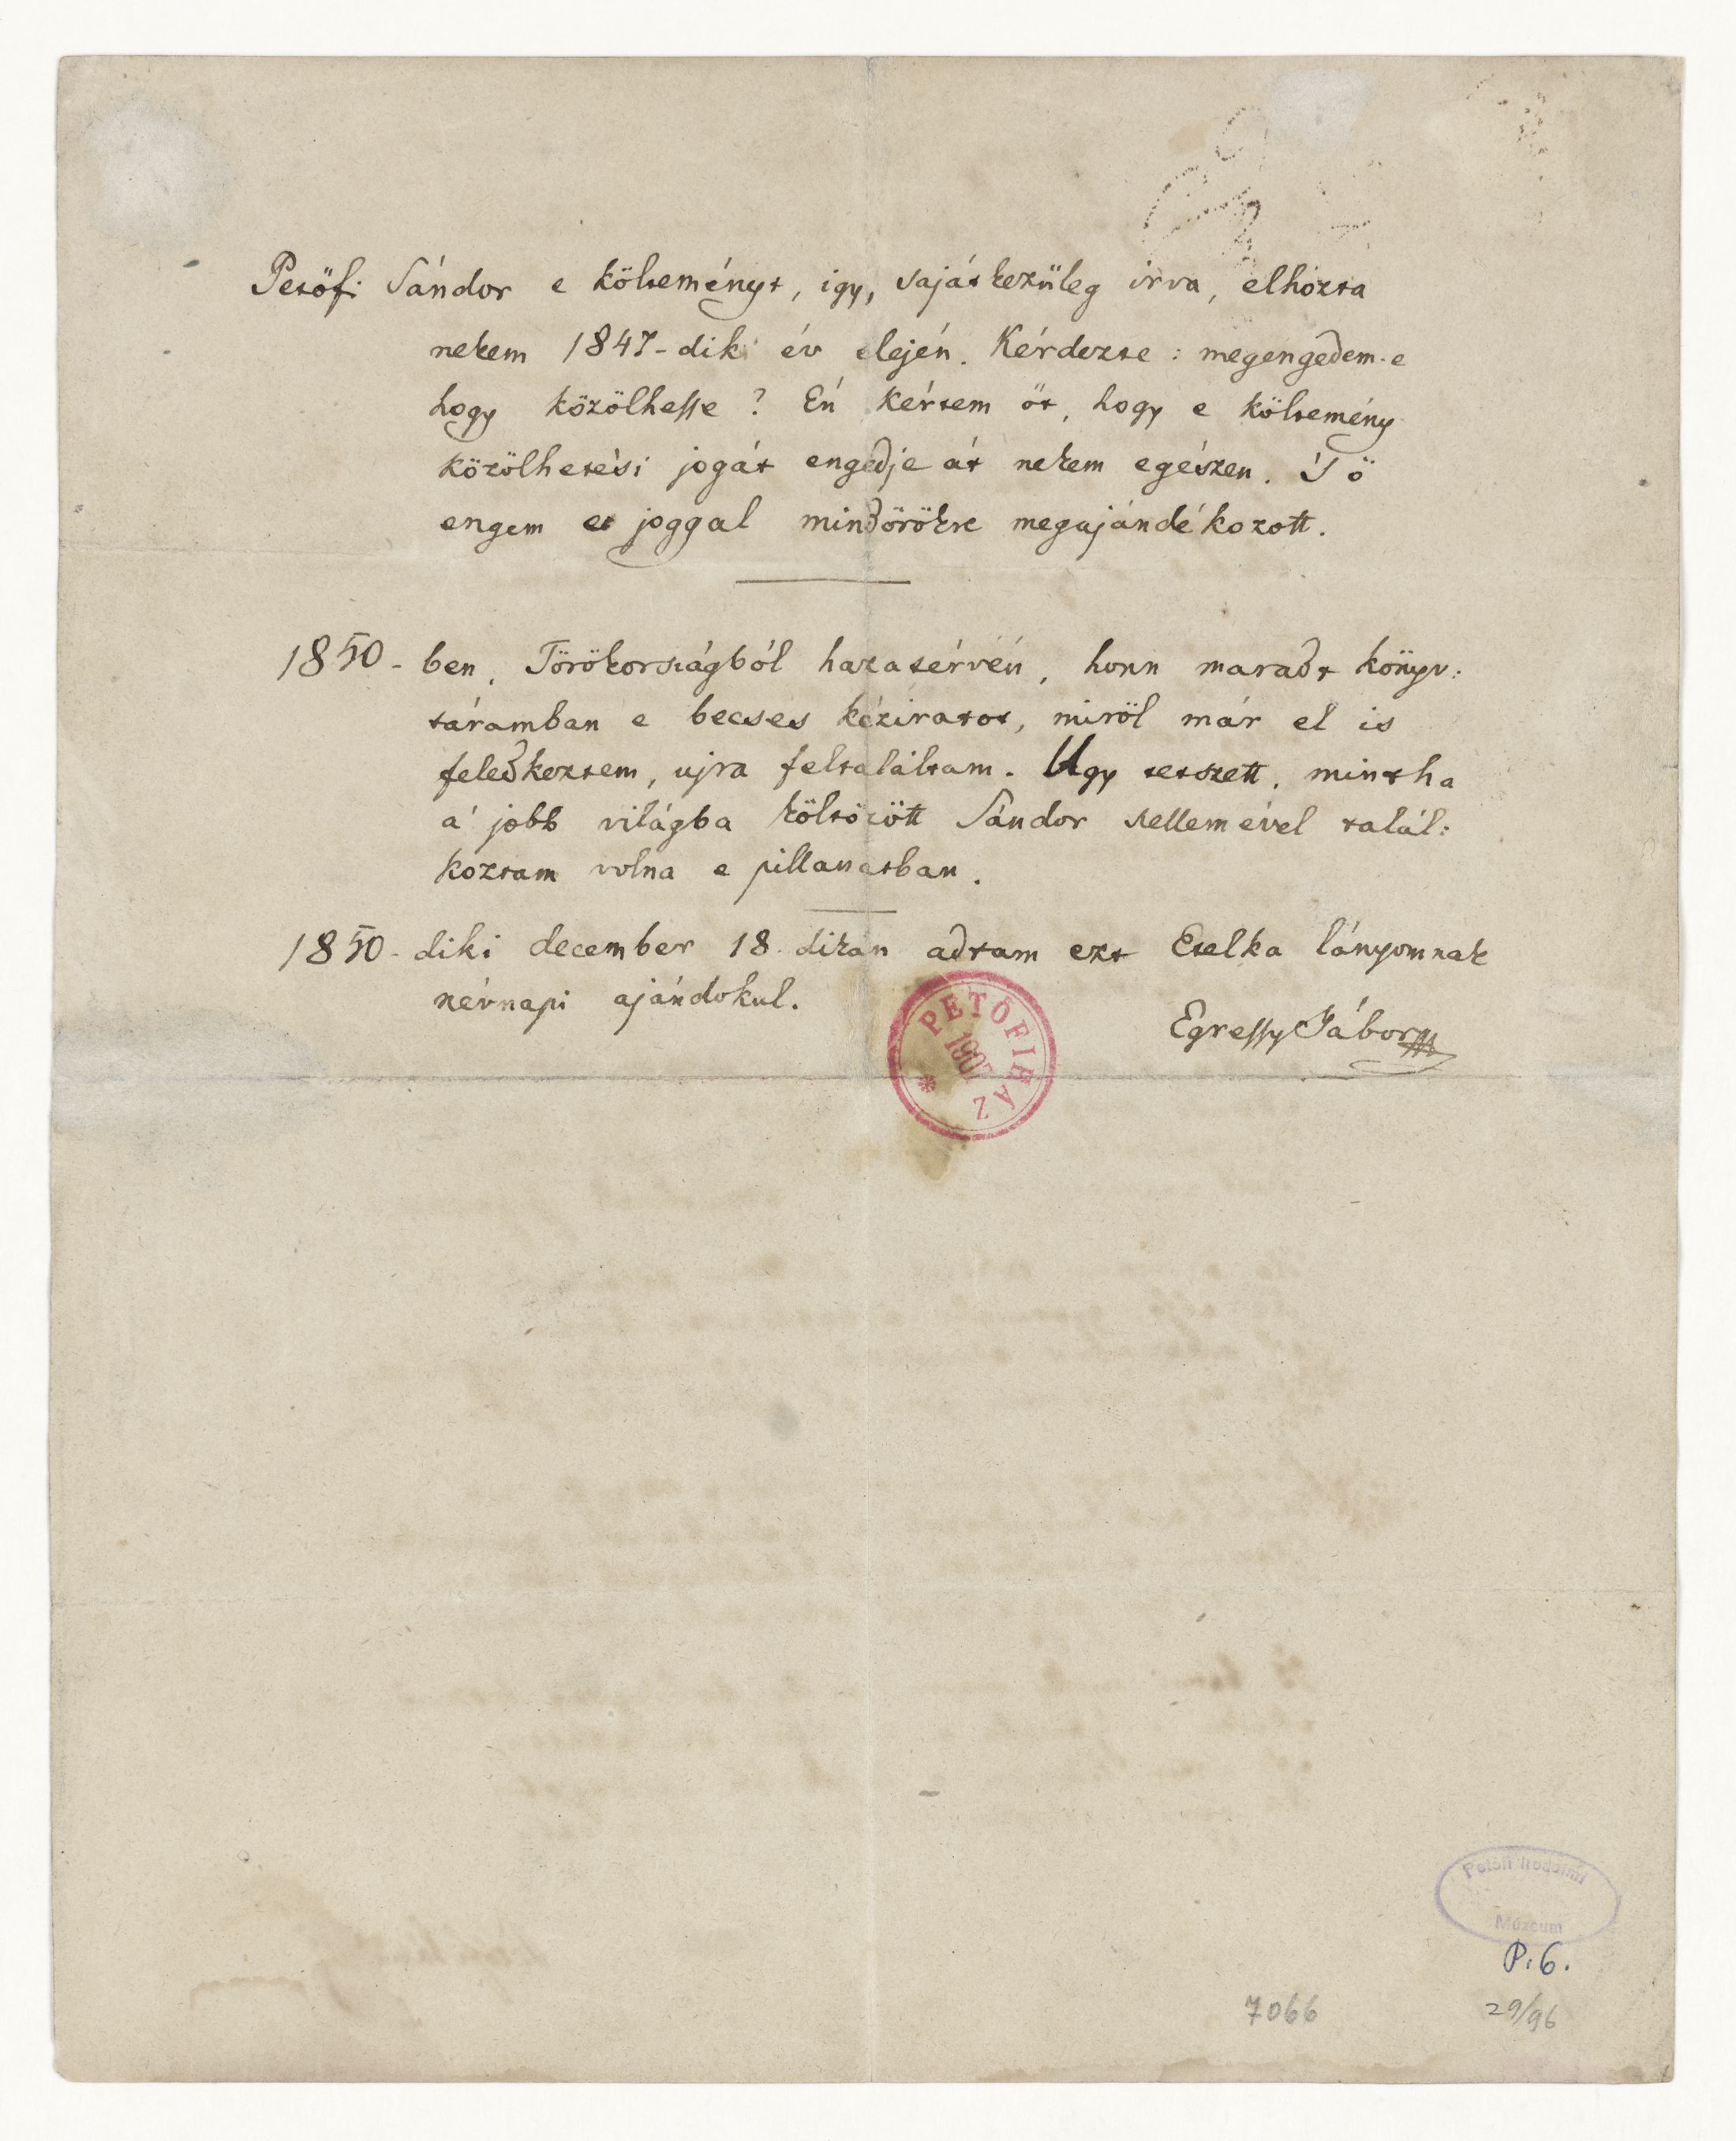 Petőfi Sándor Egressy Etelke című versének autográf kézirata és Egressy Gábor rájegyzése a hátlapon (PIM Kézirattár P. 6)